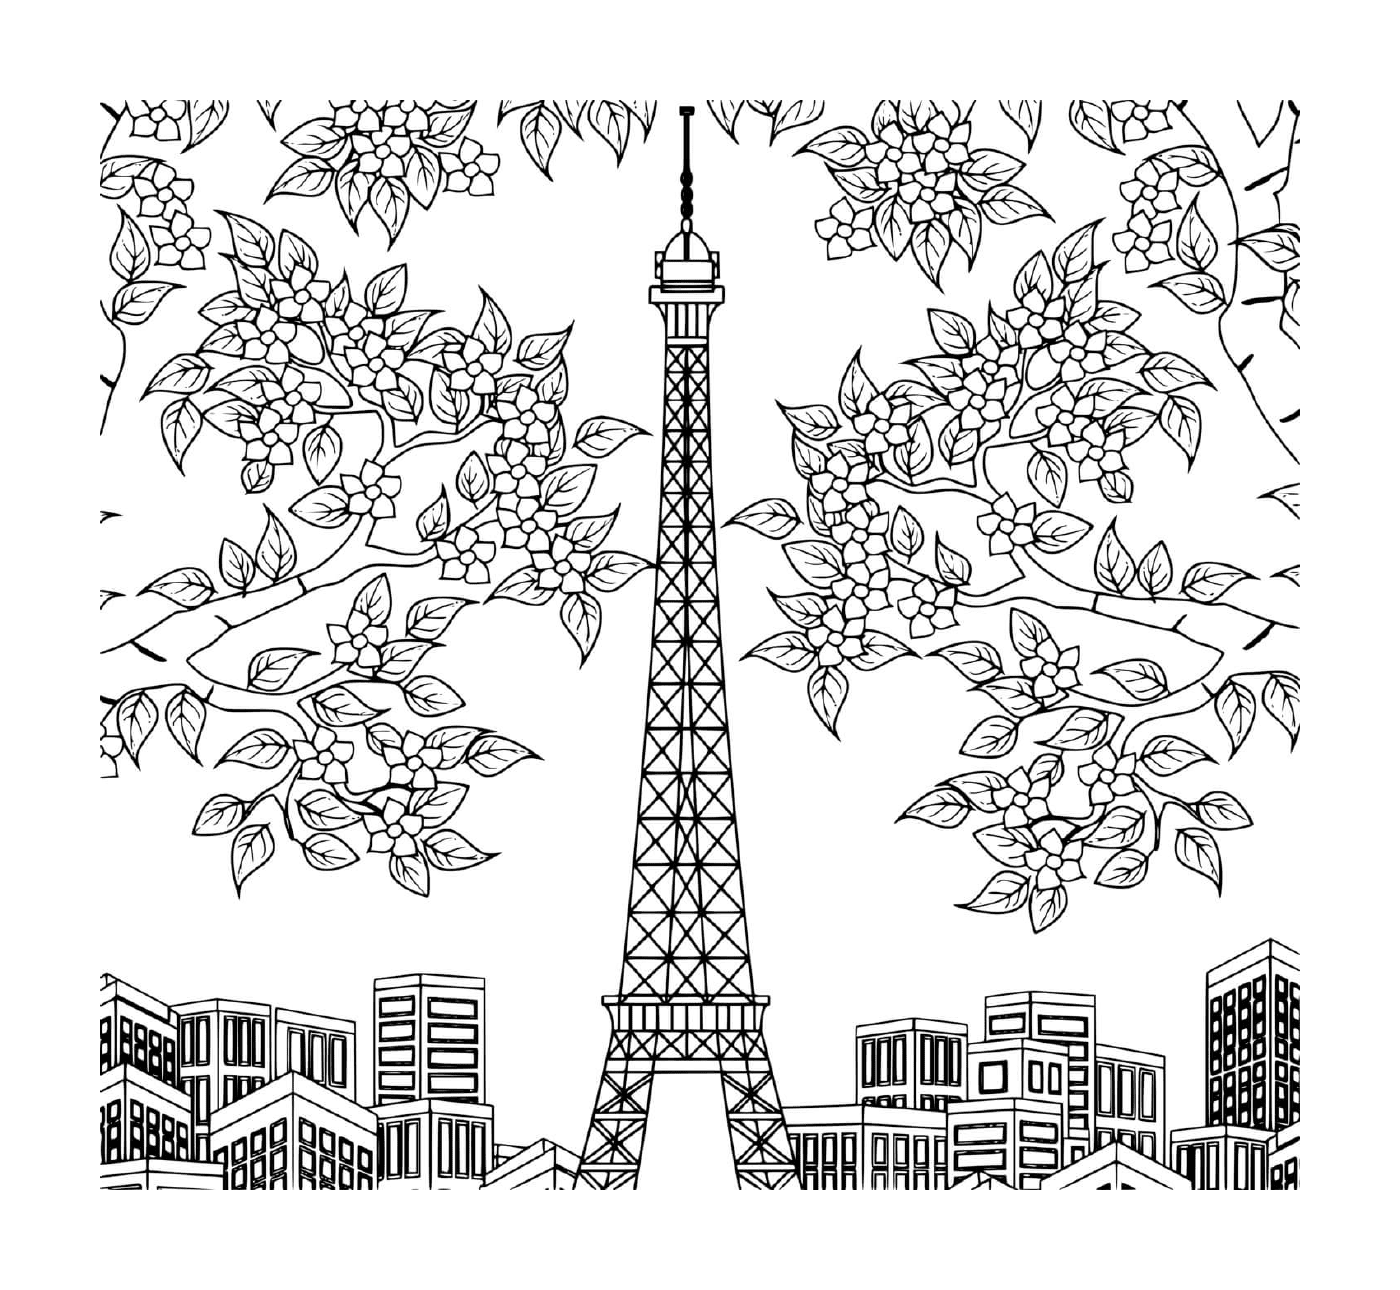   Tour Eiffel entourée d'arbres, de fleurs et de bâtiments 